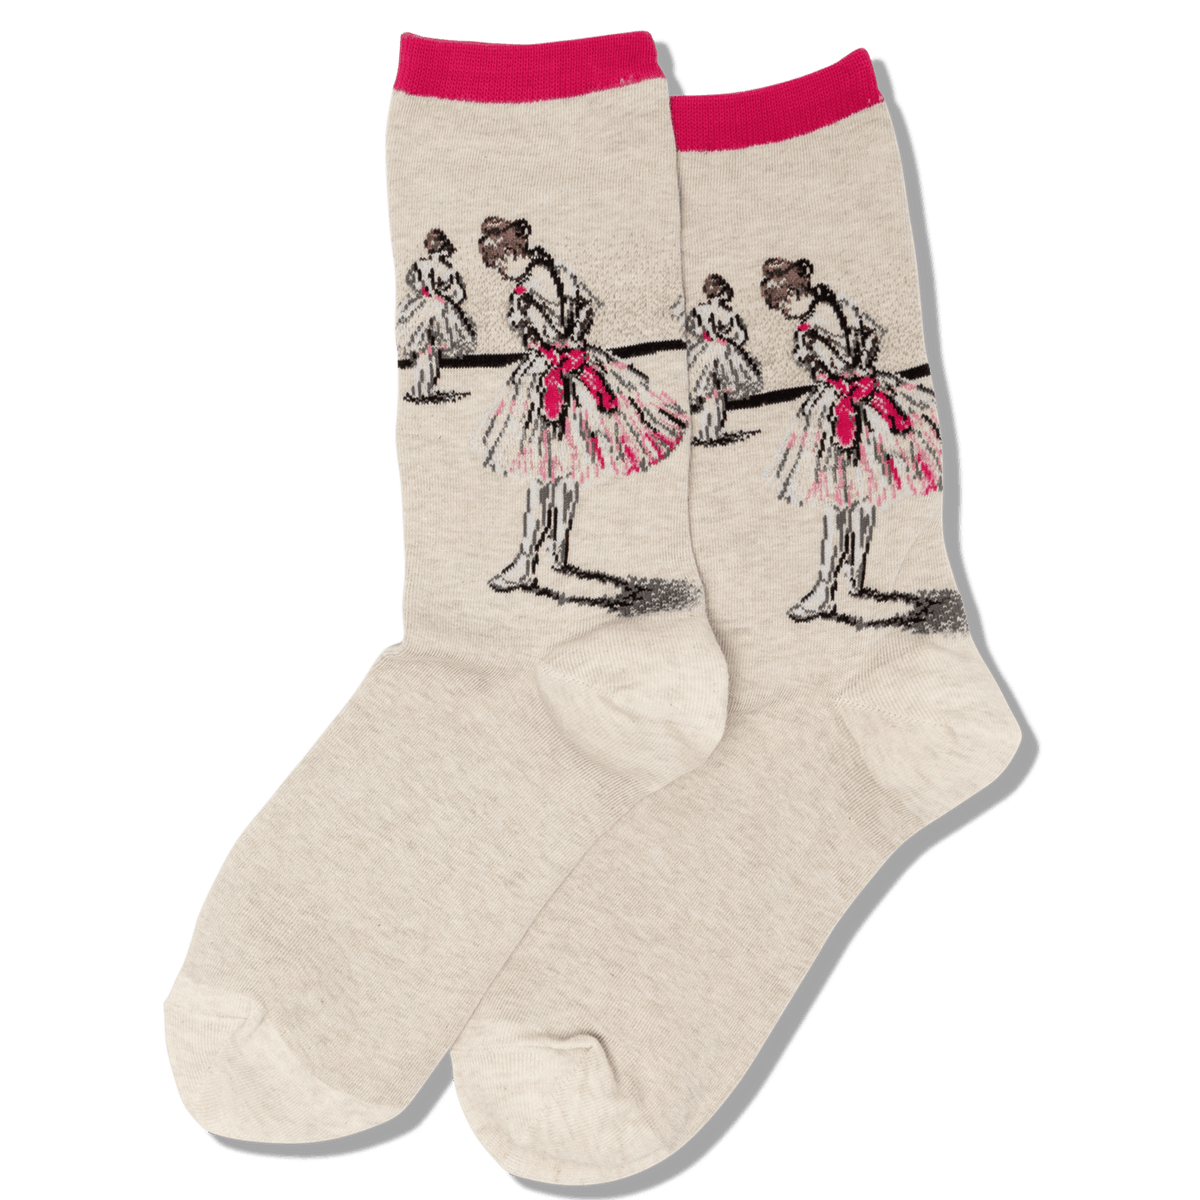 Degas Study Dancer Socks Women&#39;s Crew Sock Pink